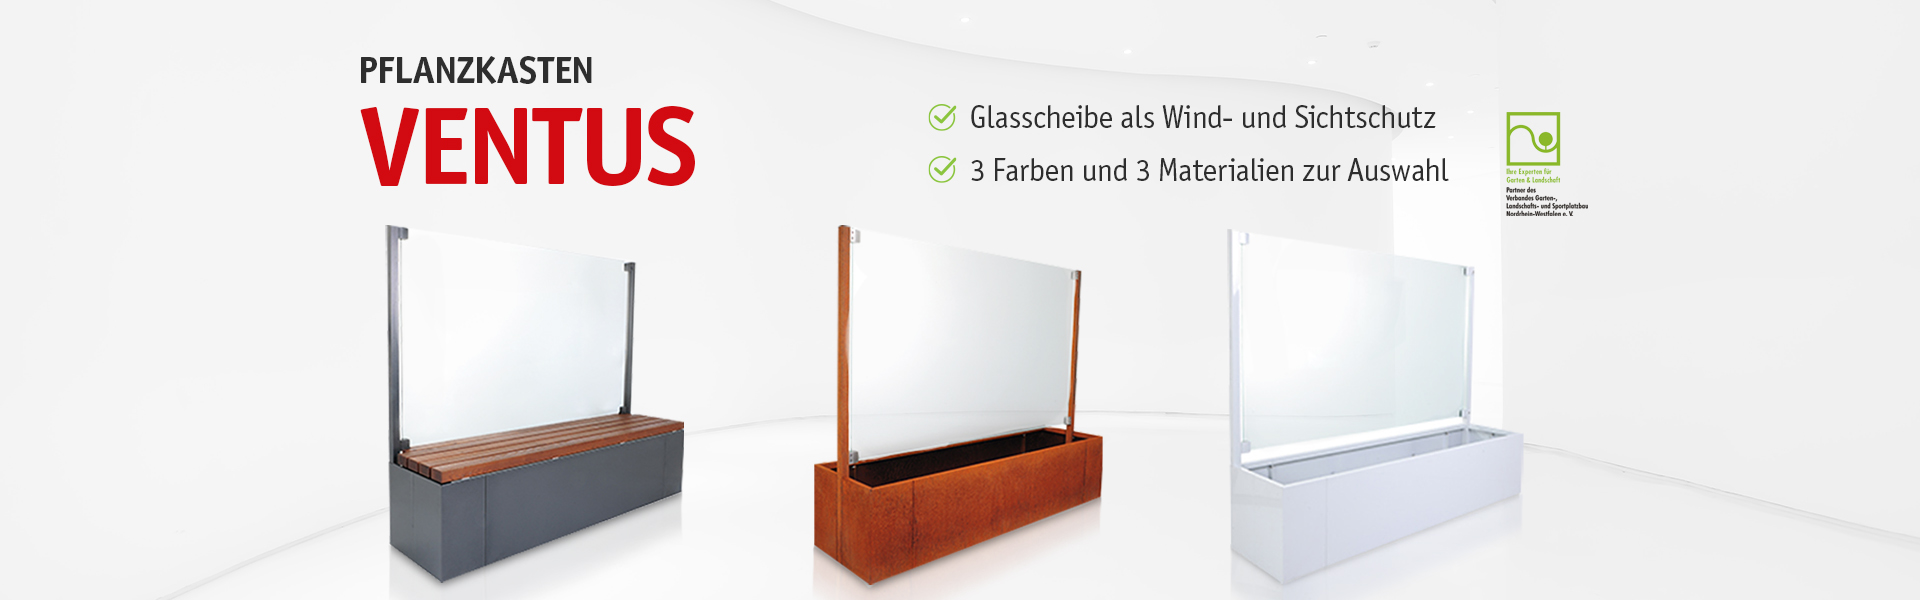 Pflanzkasten Ventus - Mit Glasscheibe als Wind- und Sichtschutz - 3 Farben und 3 Materialien zur Auswahl